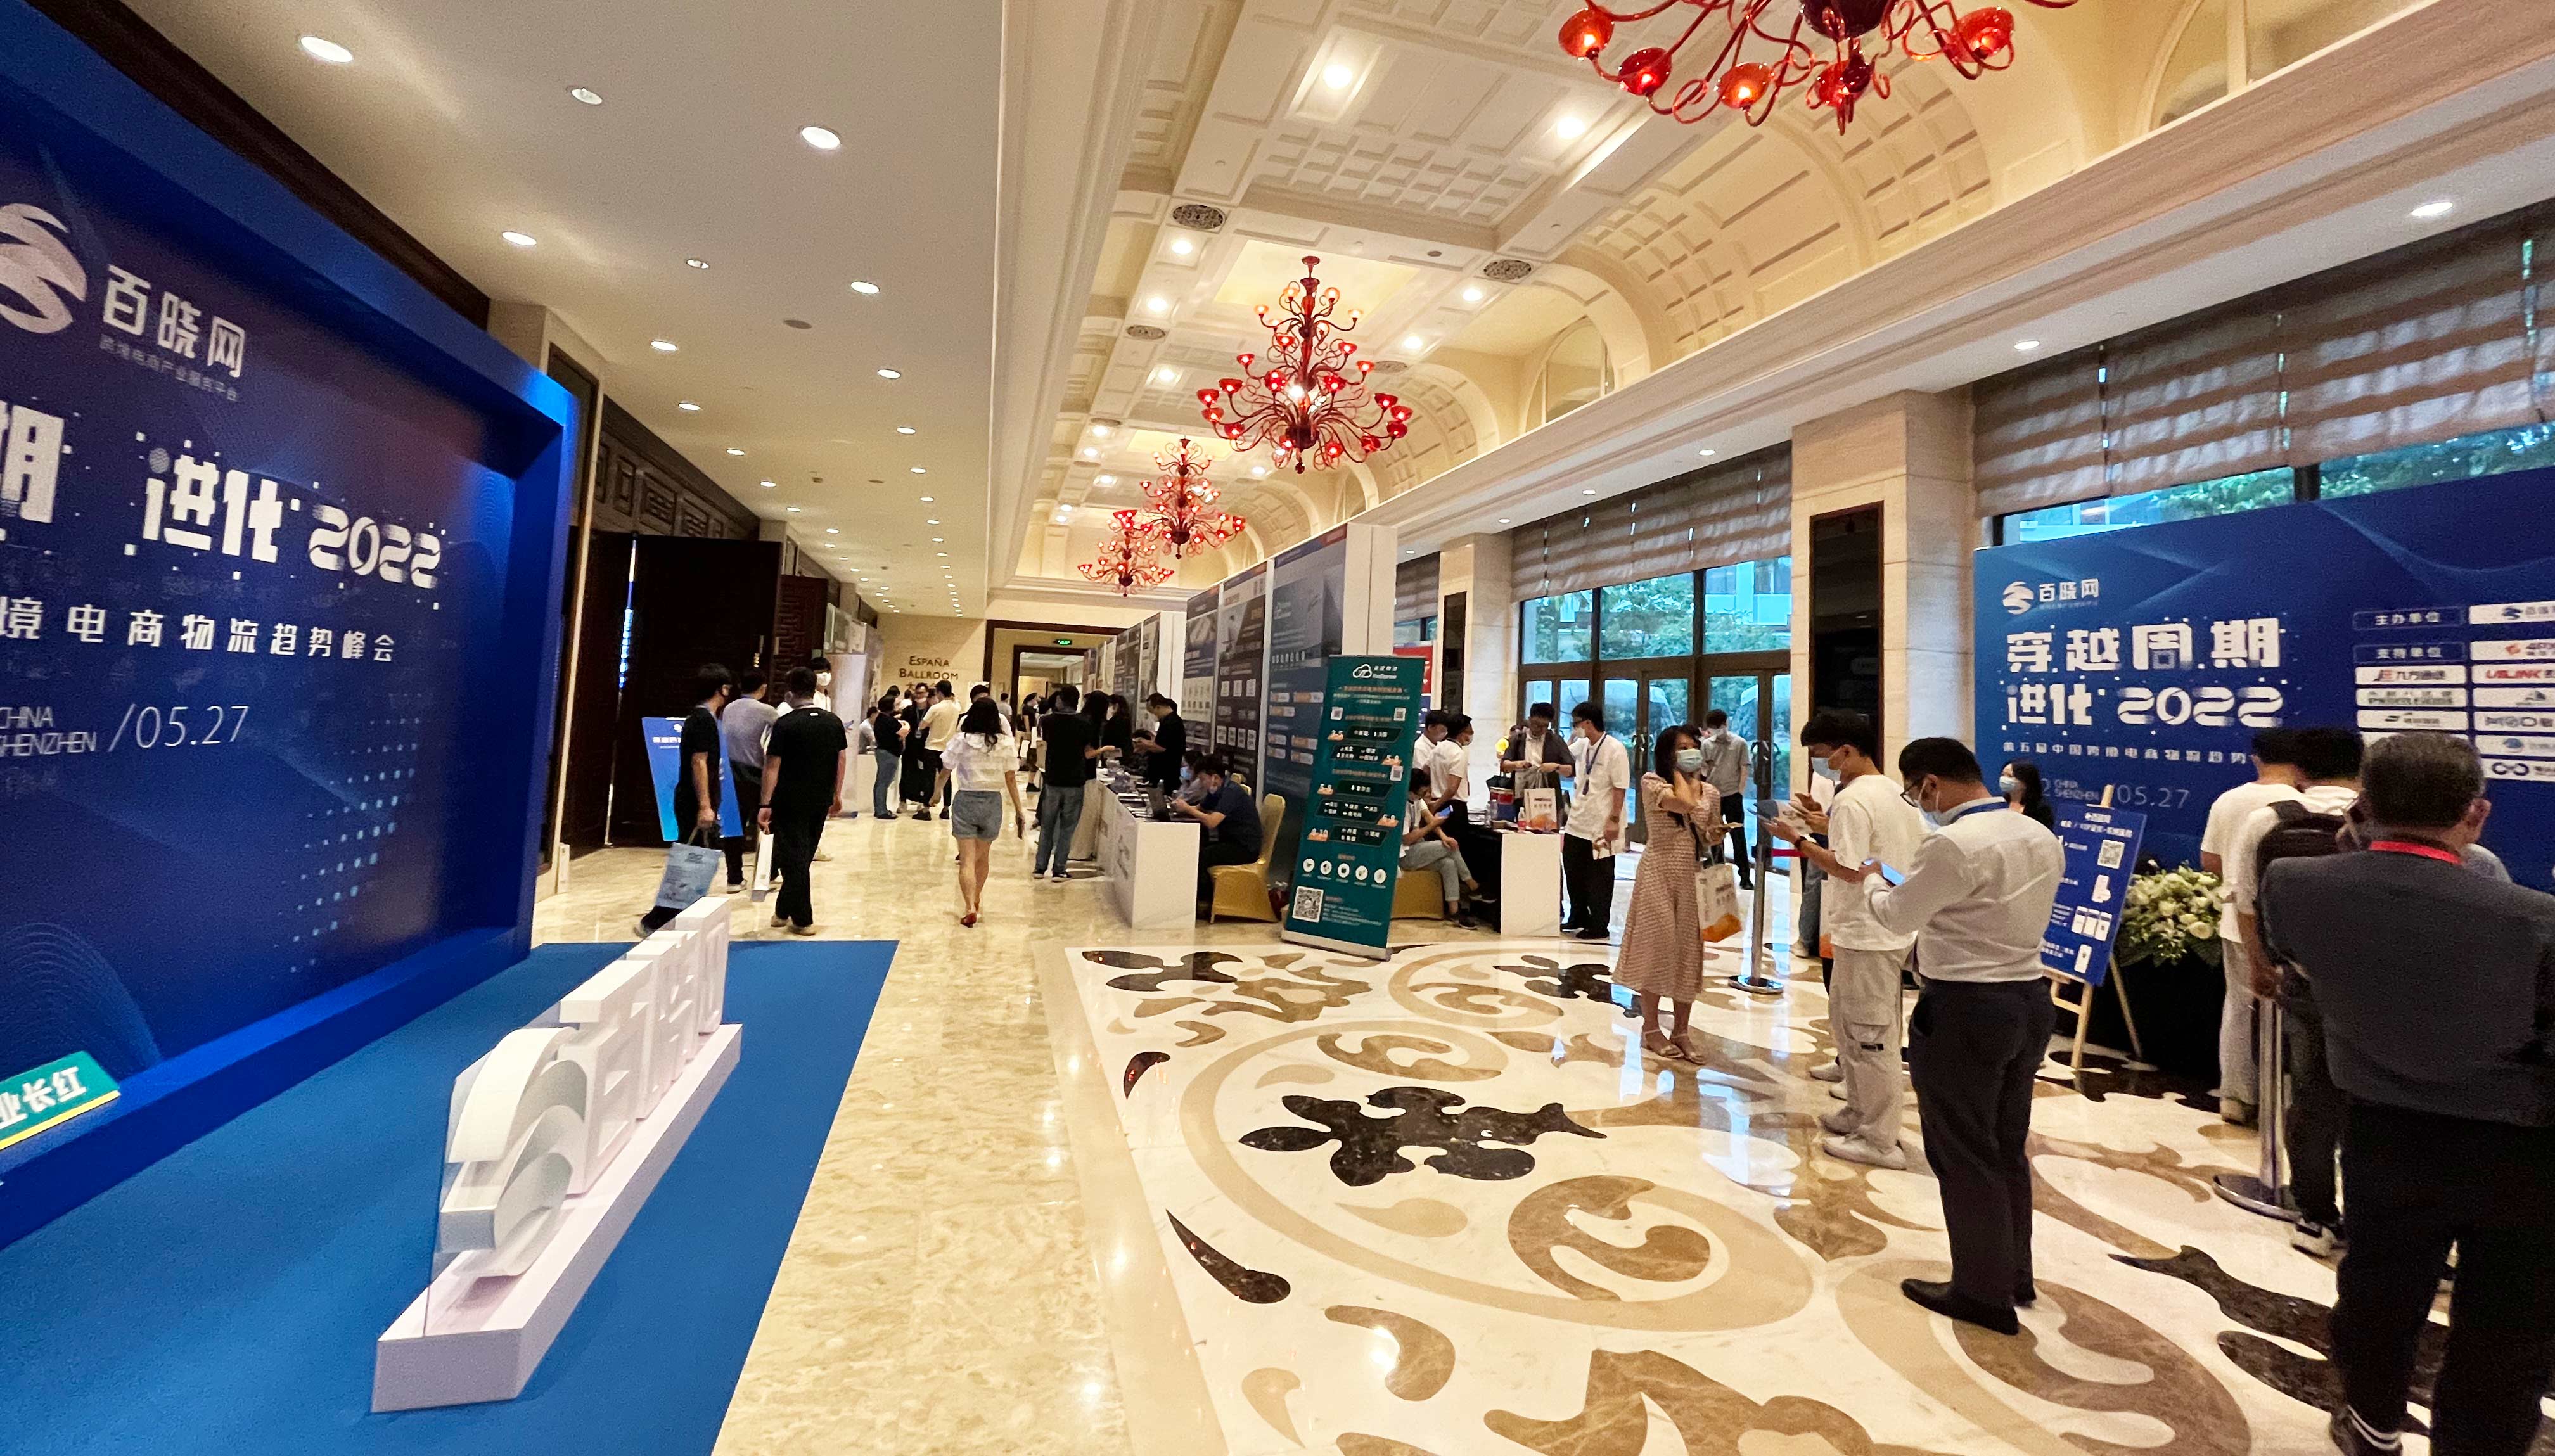 广州泰实物流国际分公司携众员工参加第五届中国跨境电商物流趋势峰会